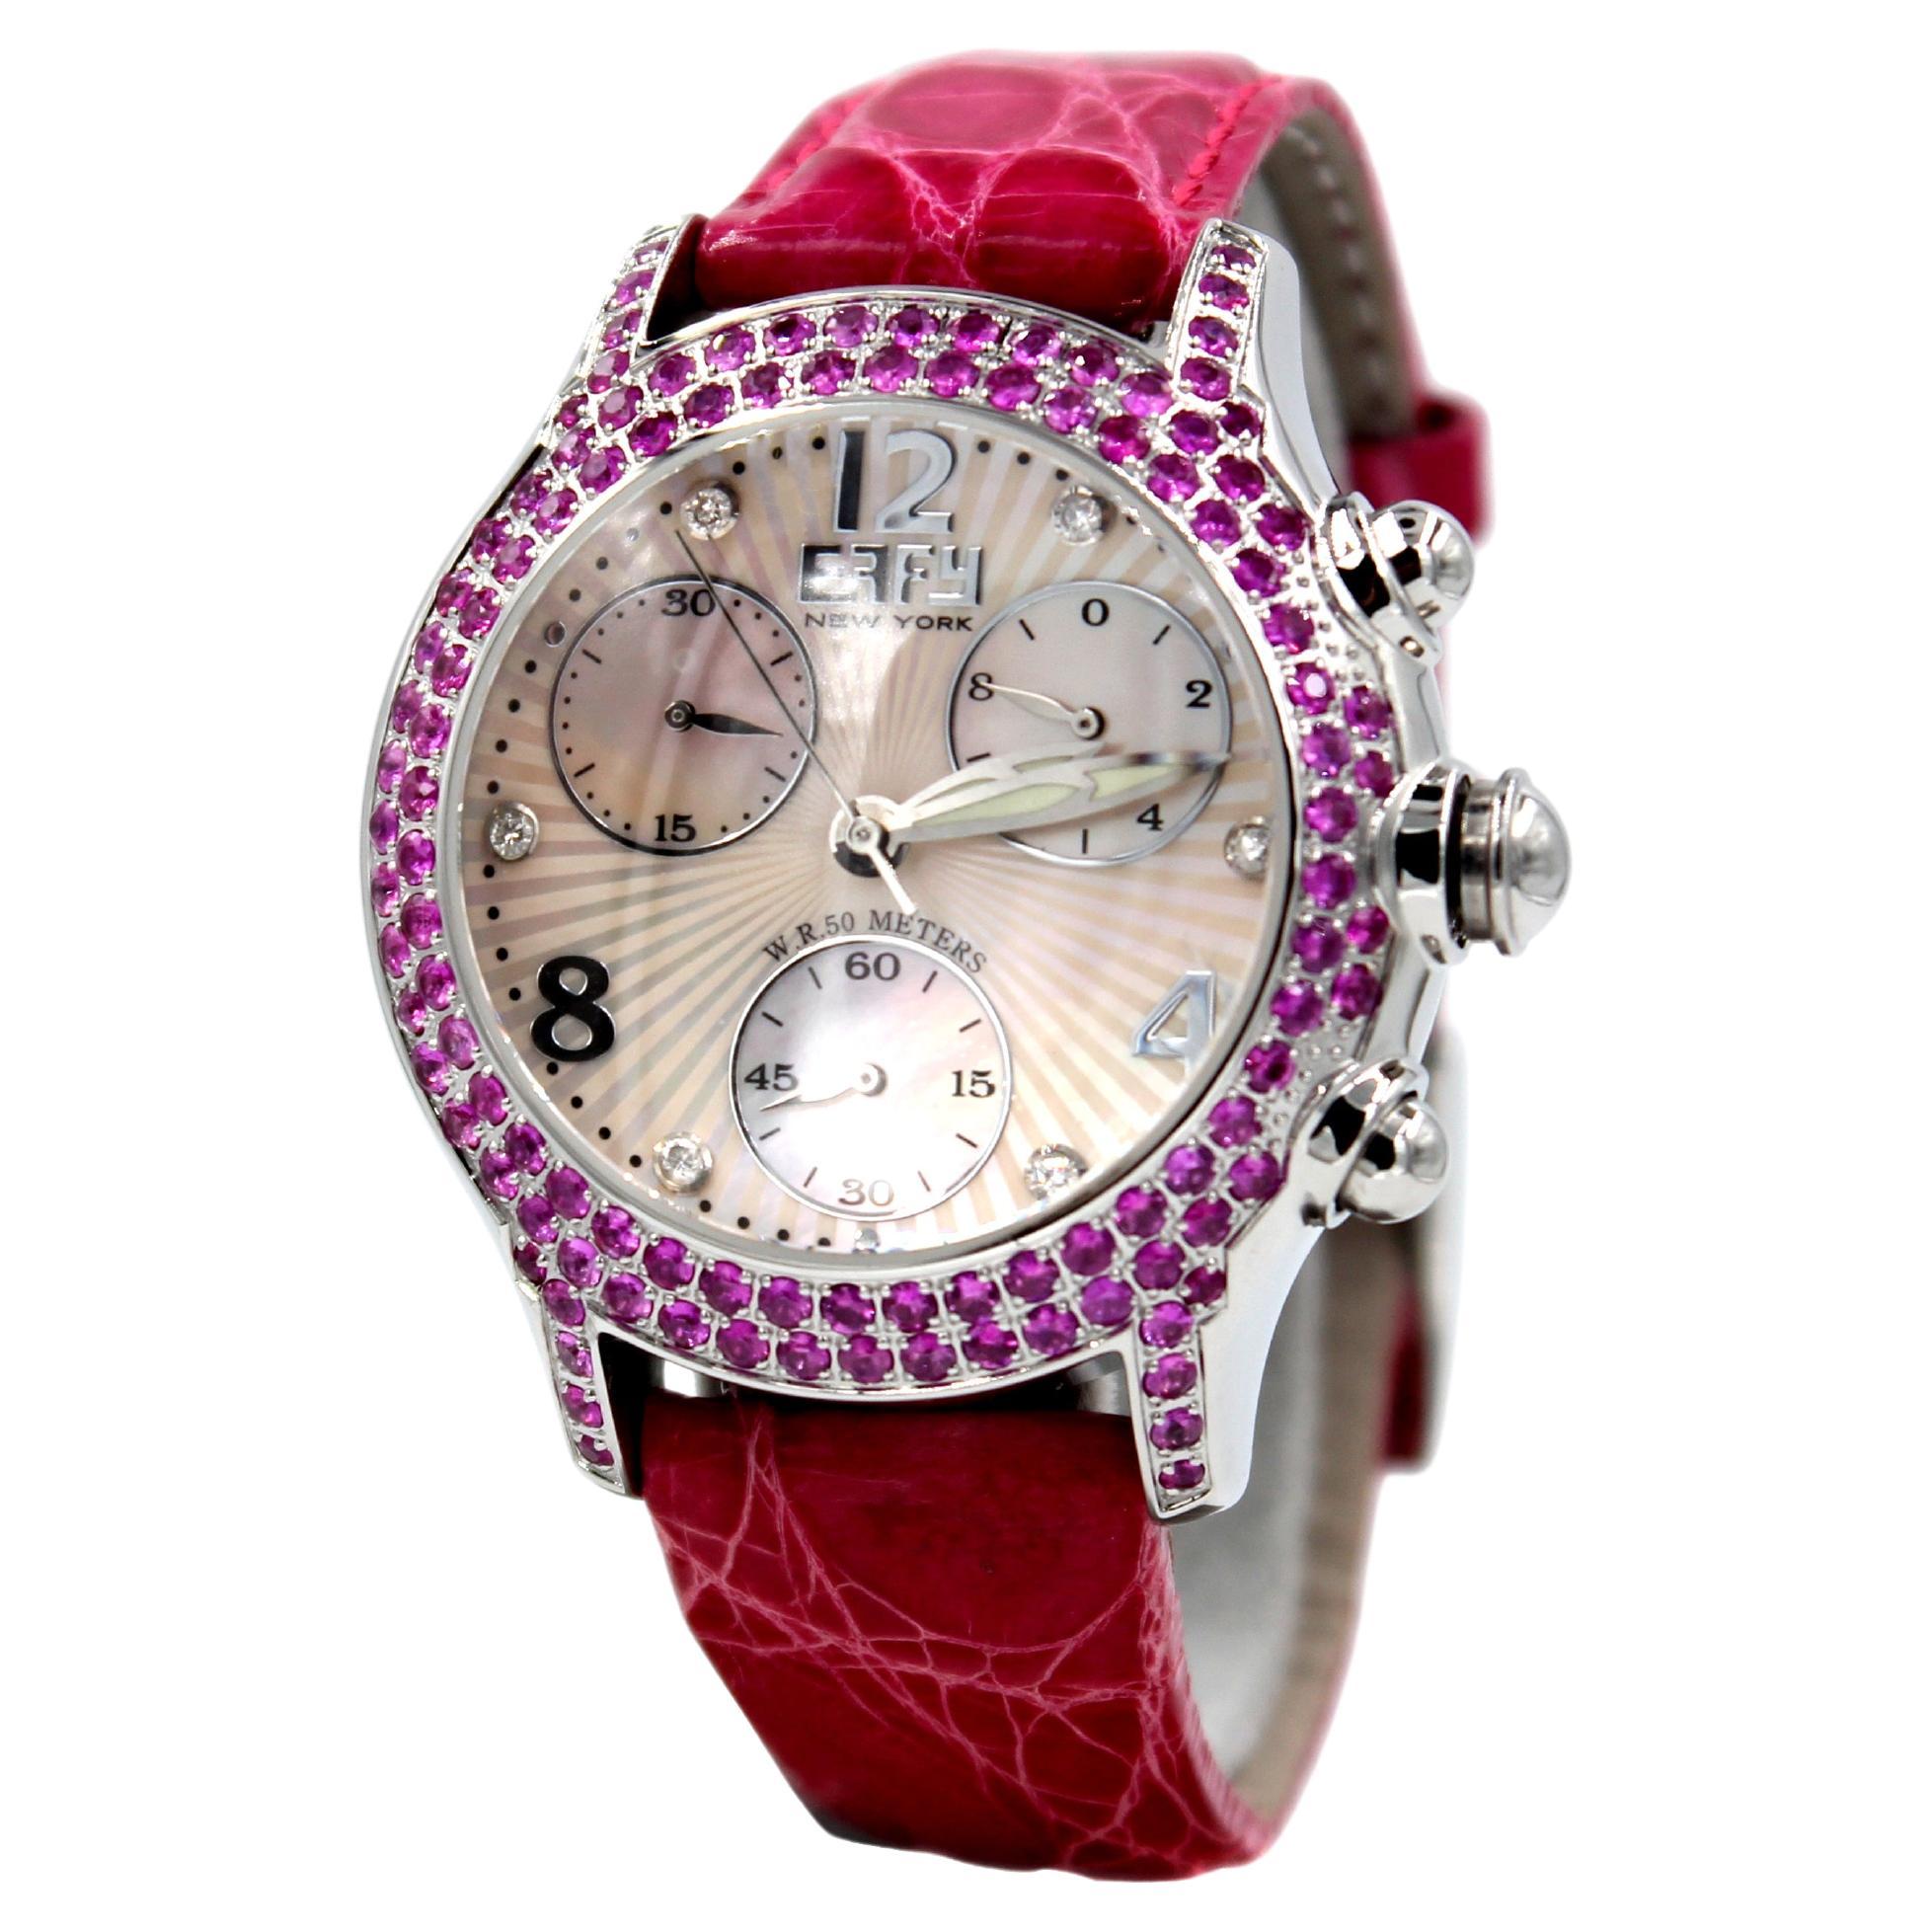 Luxus Schweizer Quarz Exotische Lederbanduhr mit rosa Saphiren und Diamanten, Pav-Zifferblatt